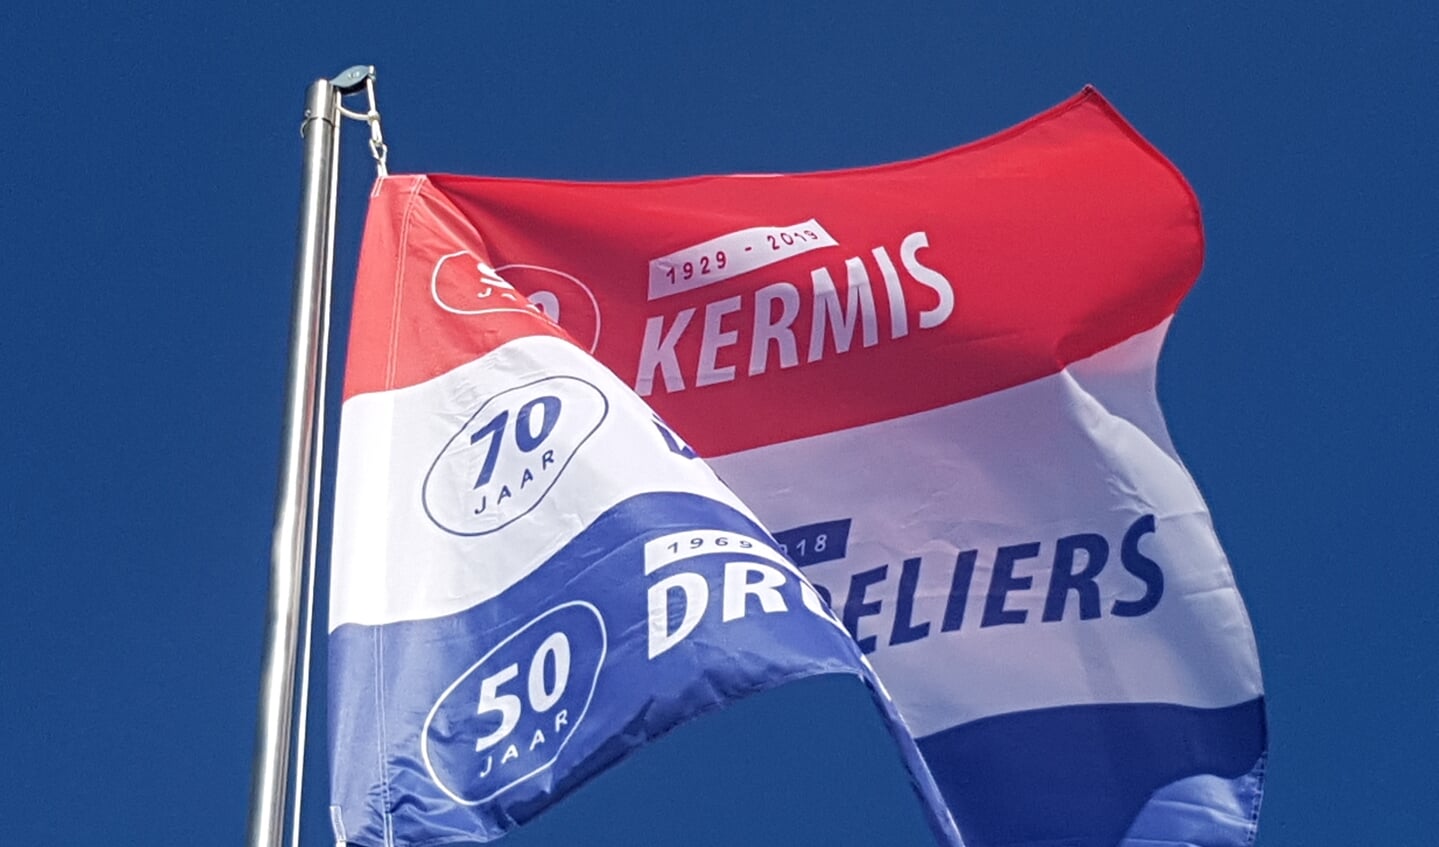 De speciaal ontworpen jubileumvlag wappert boven het kermisterrein in Lievelde